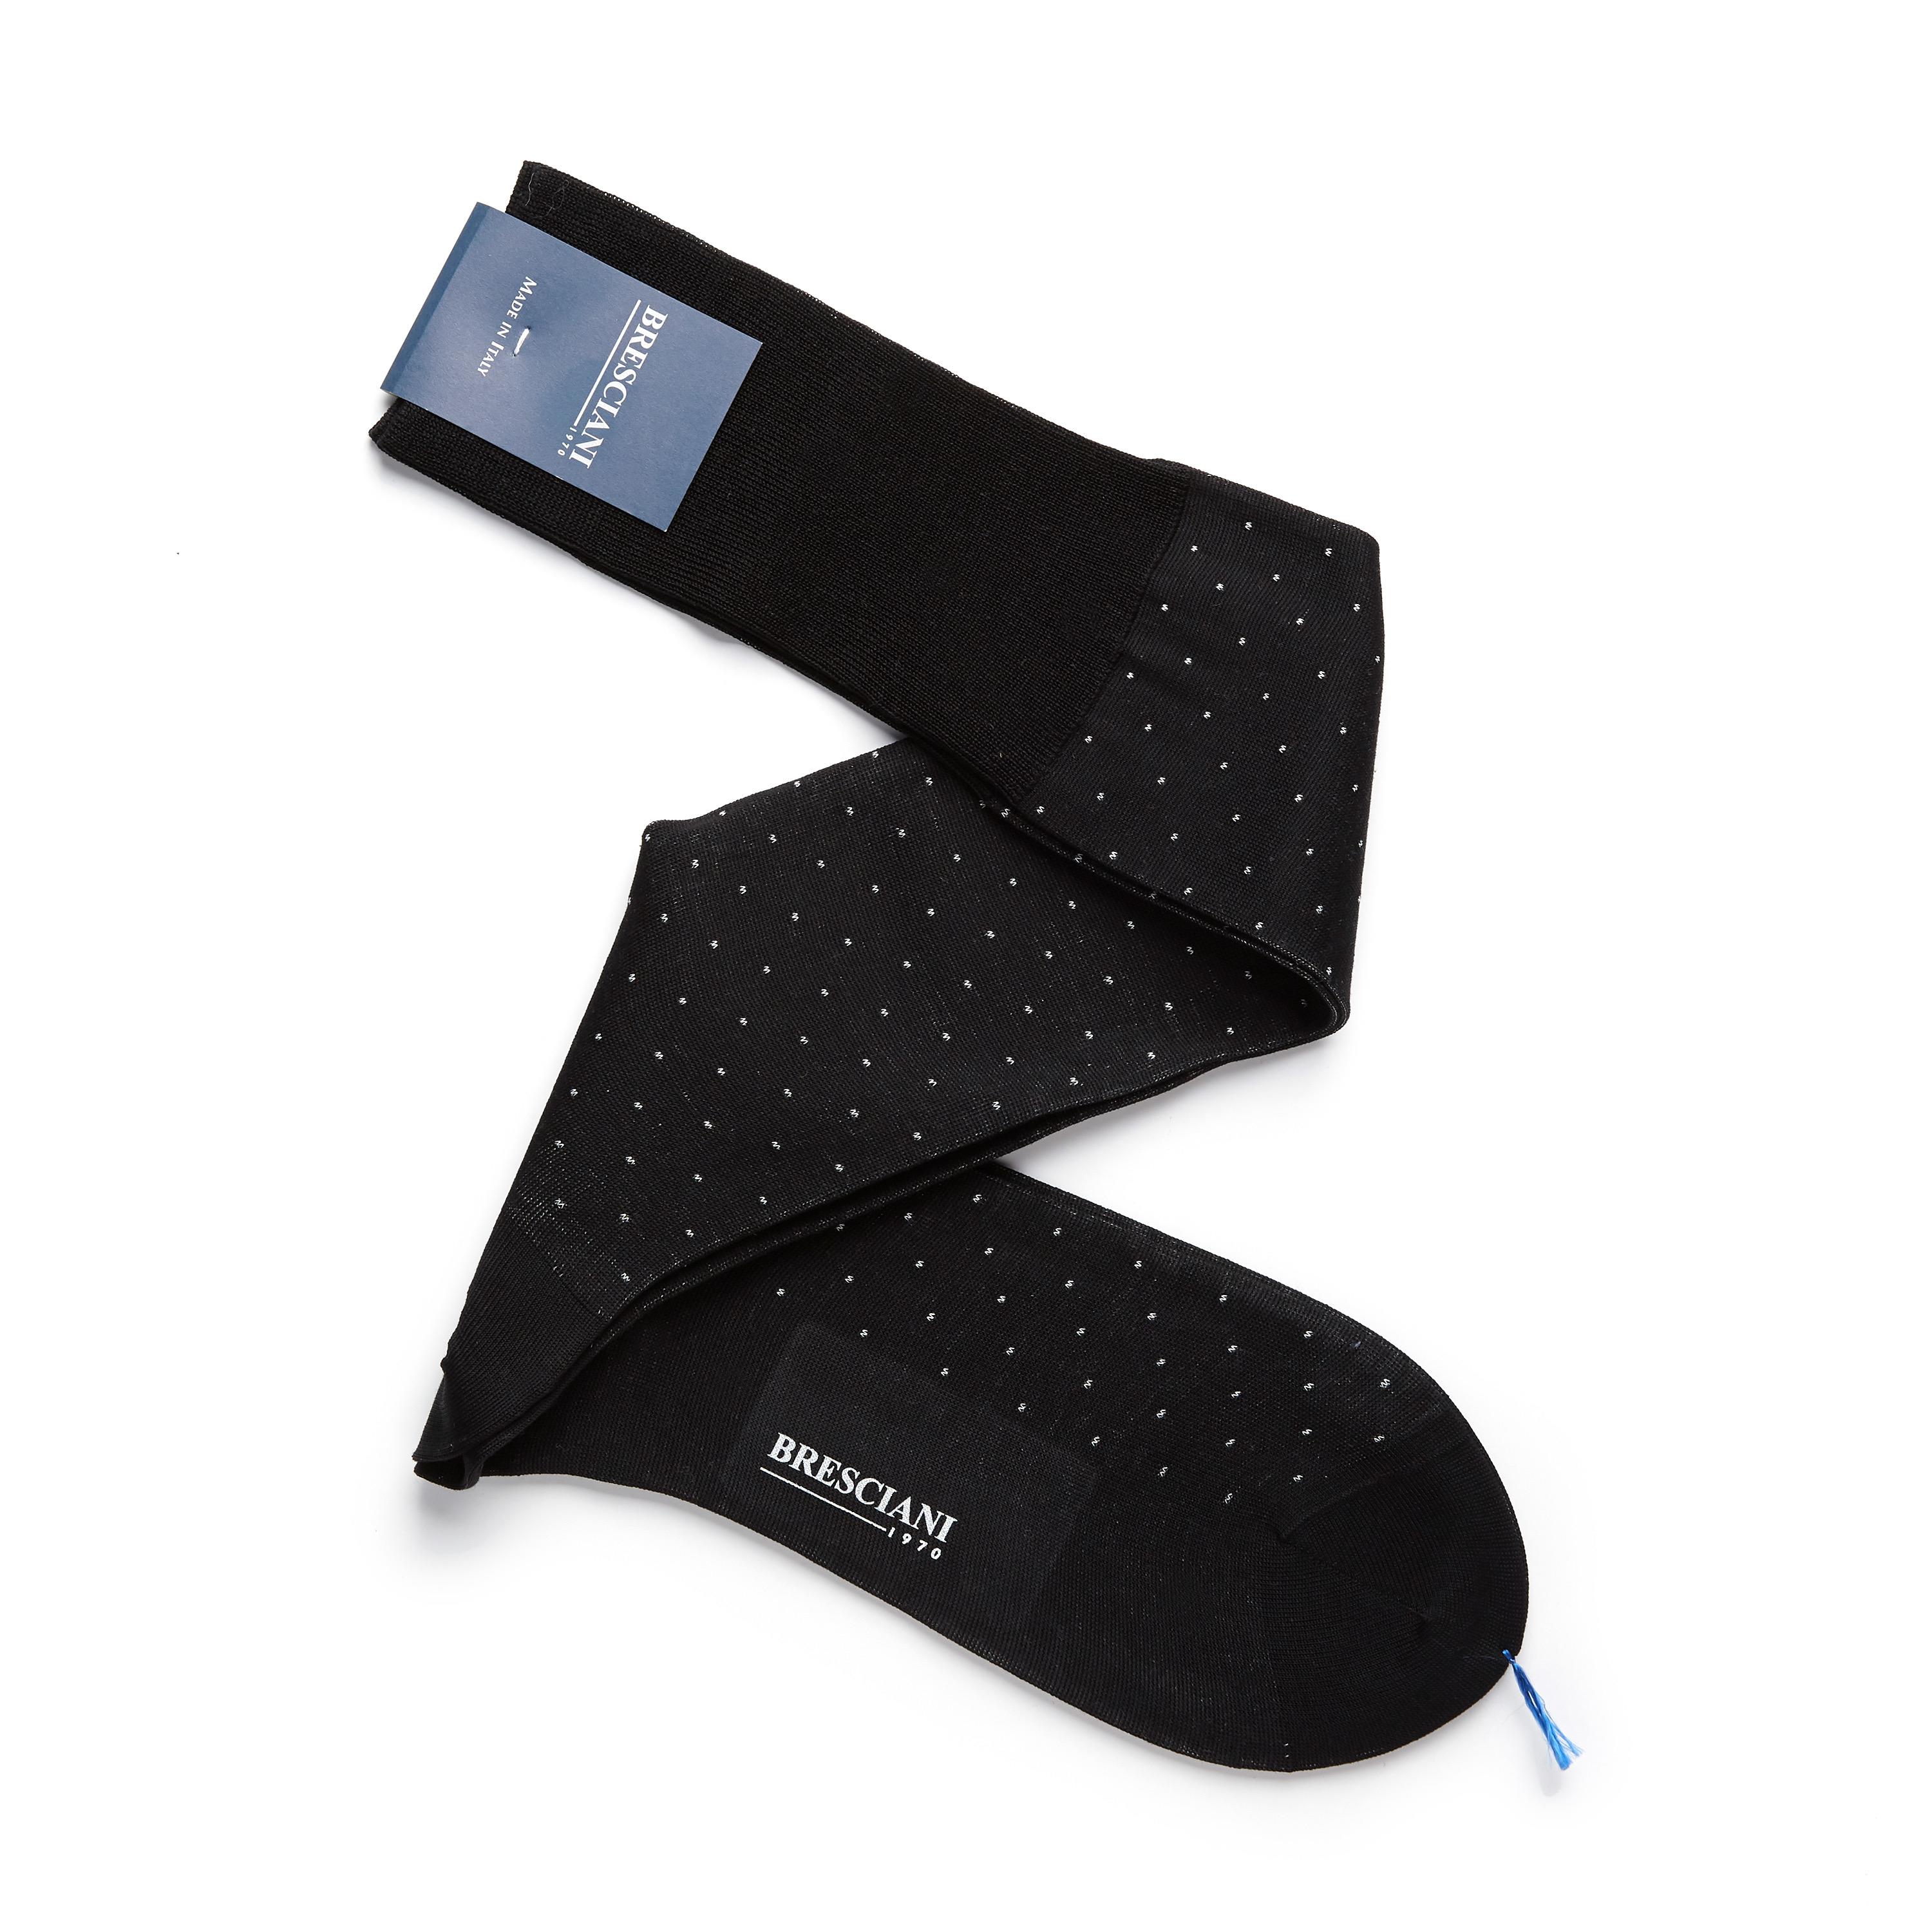 Bresciani-over-the-calf-cotton-socks-in-Microdot pattern Black 1